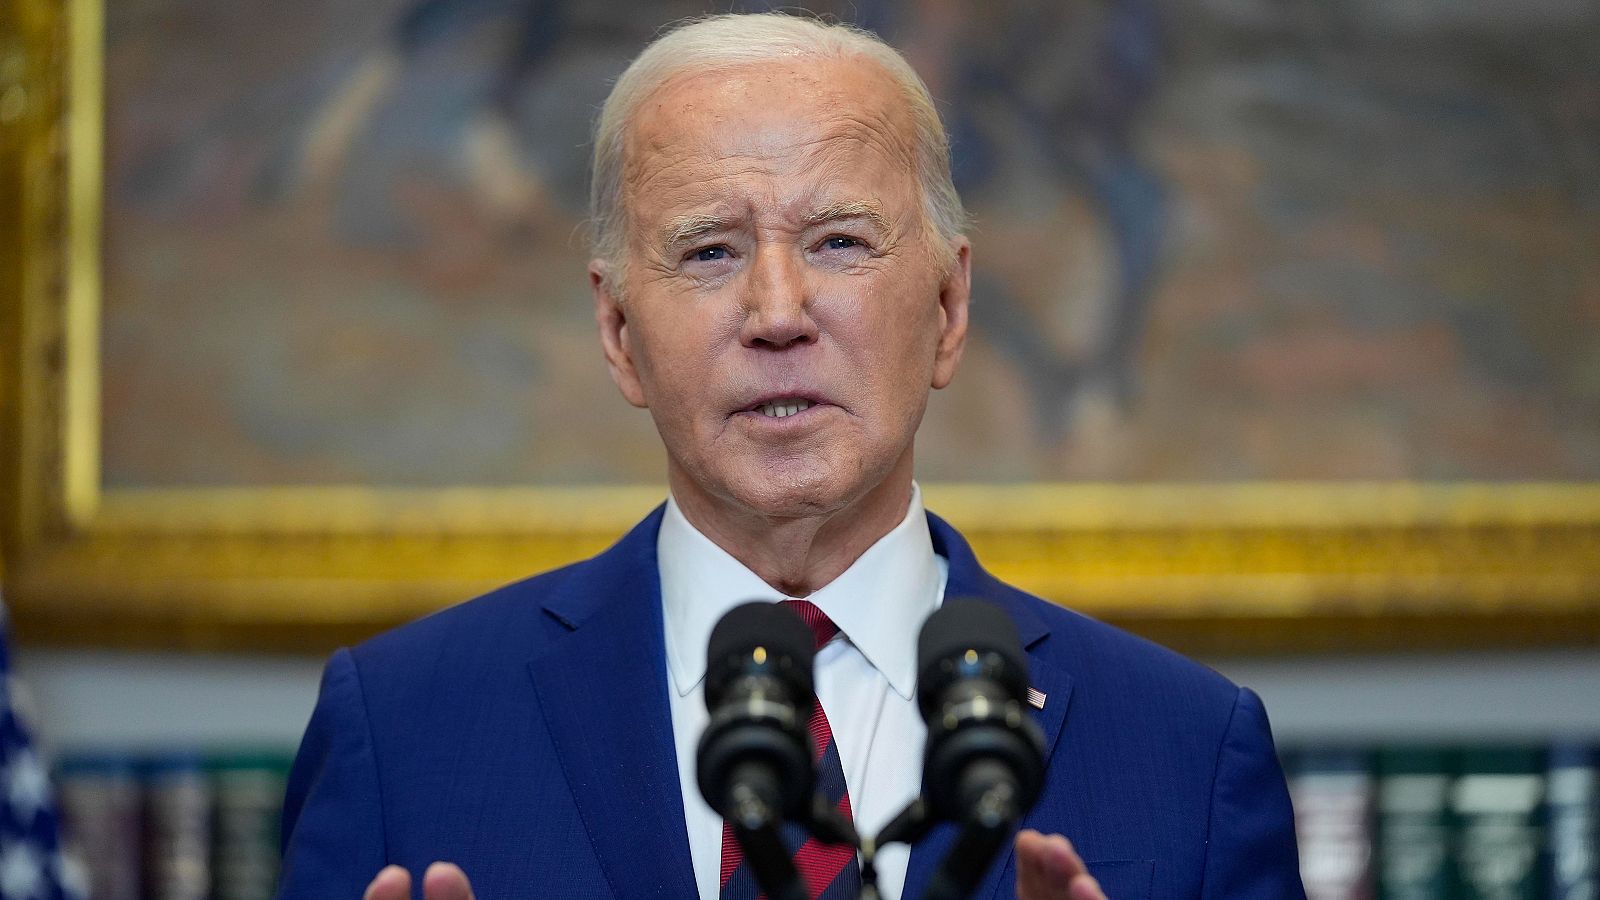 Biden descarta que el hundimiento del puente de Baltimore haya sido intencionado: "No hay ningún indicio"